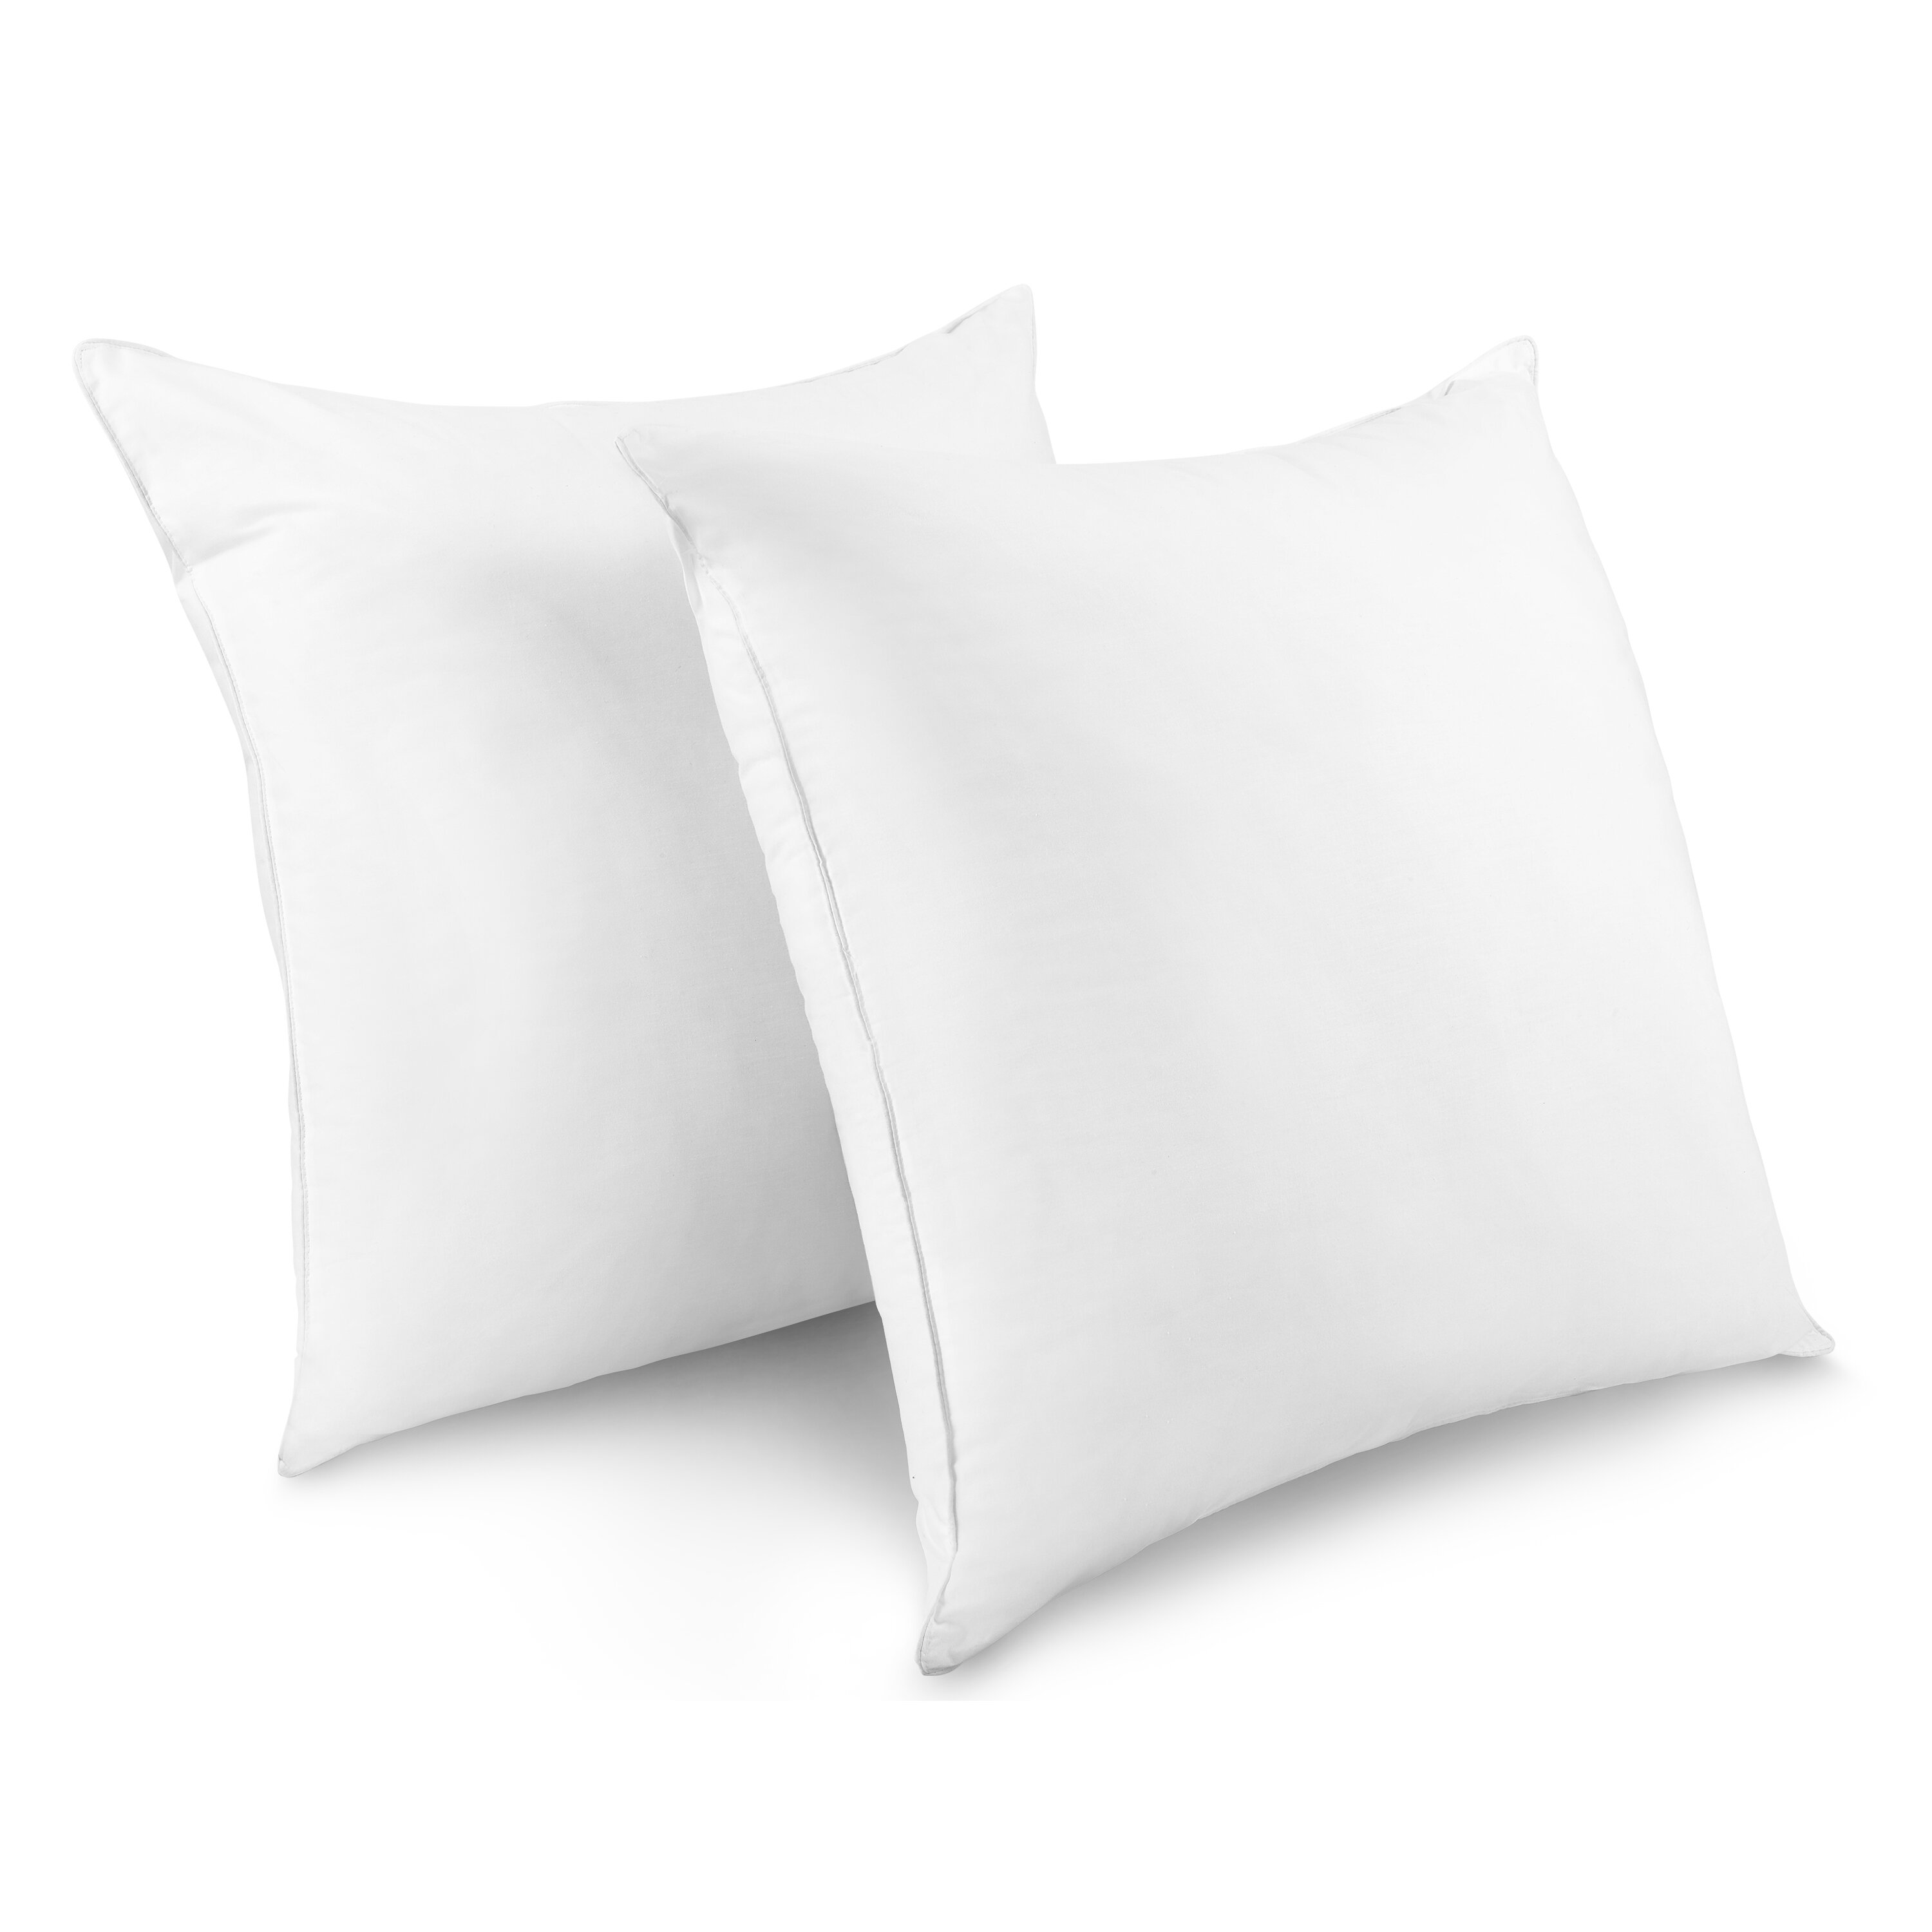 Calvin Klein Tossed Kiwi/Leaf Euro Twin Pack Pillows, 26